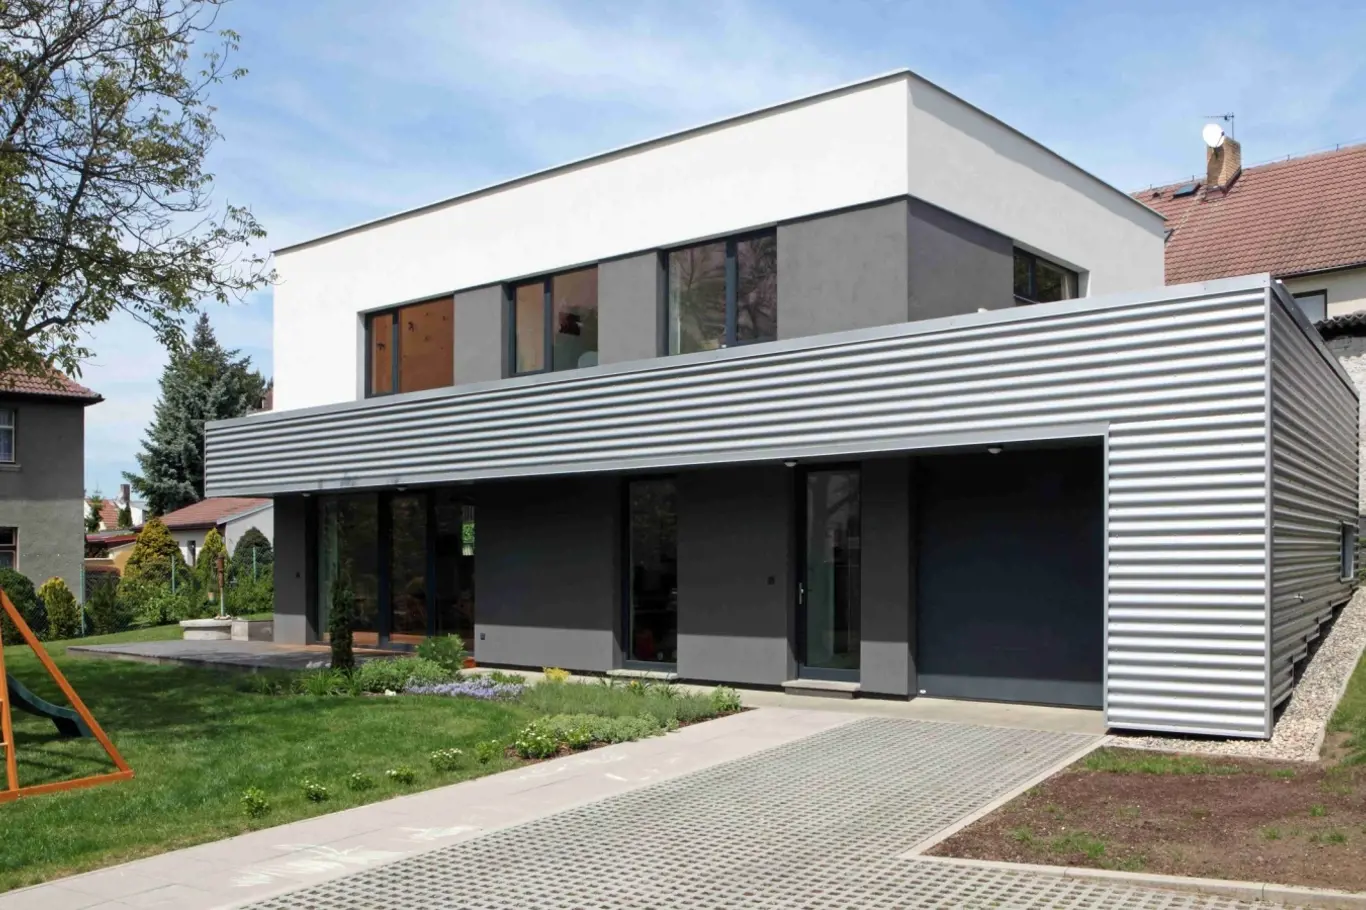 Ustupující druhé podlaží a povrchově i barevně strukturovaná fasáda opticky snižuje výšku domu.